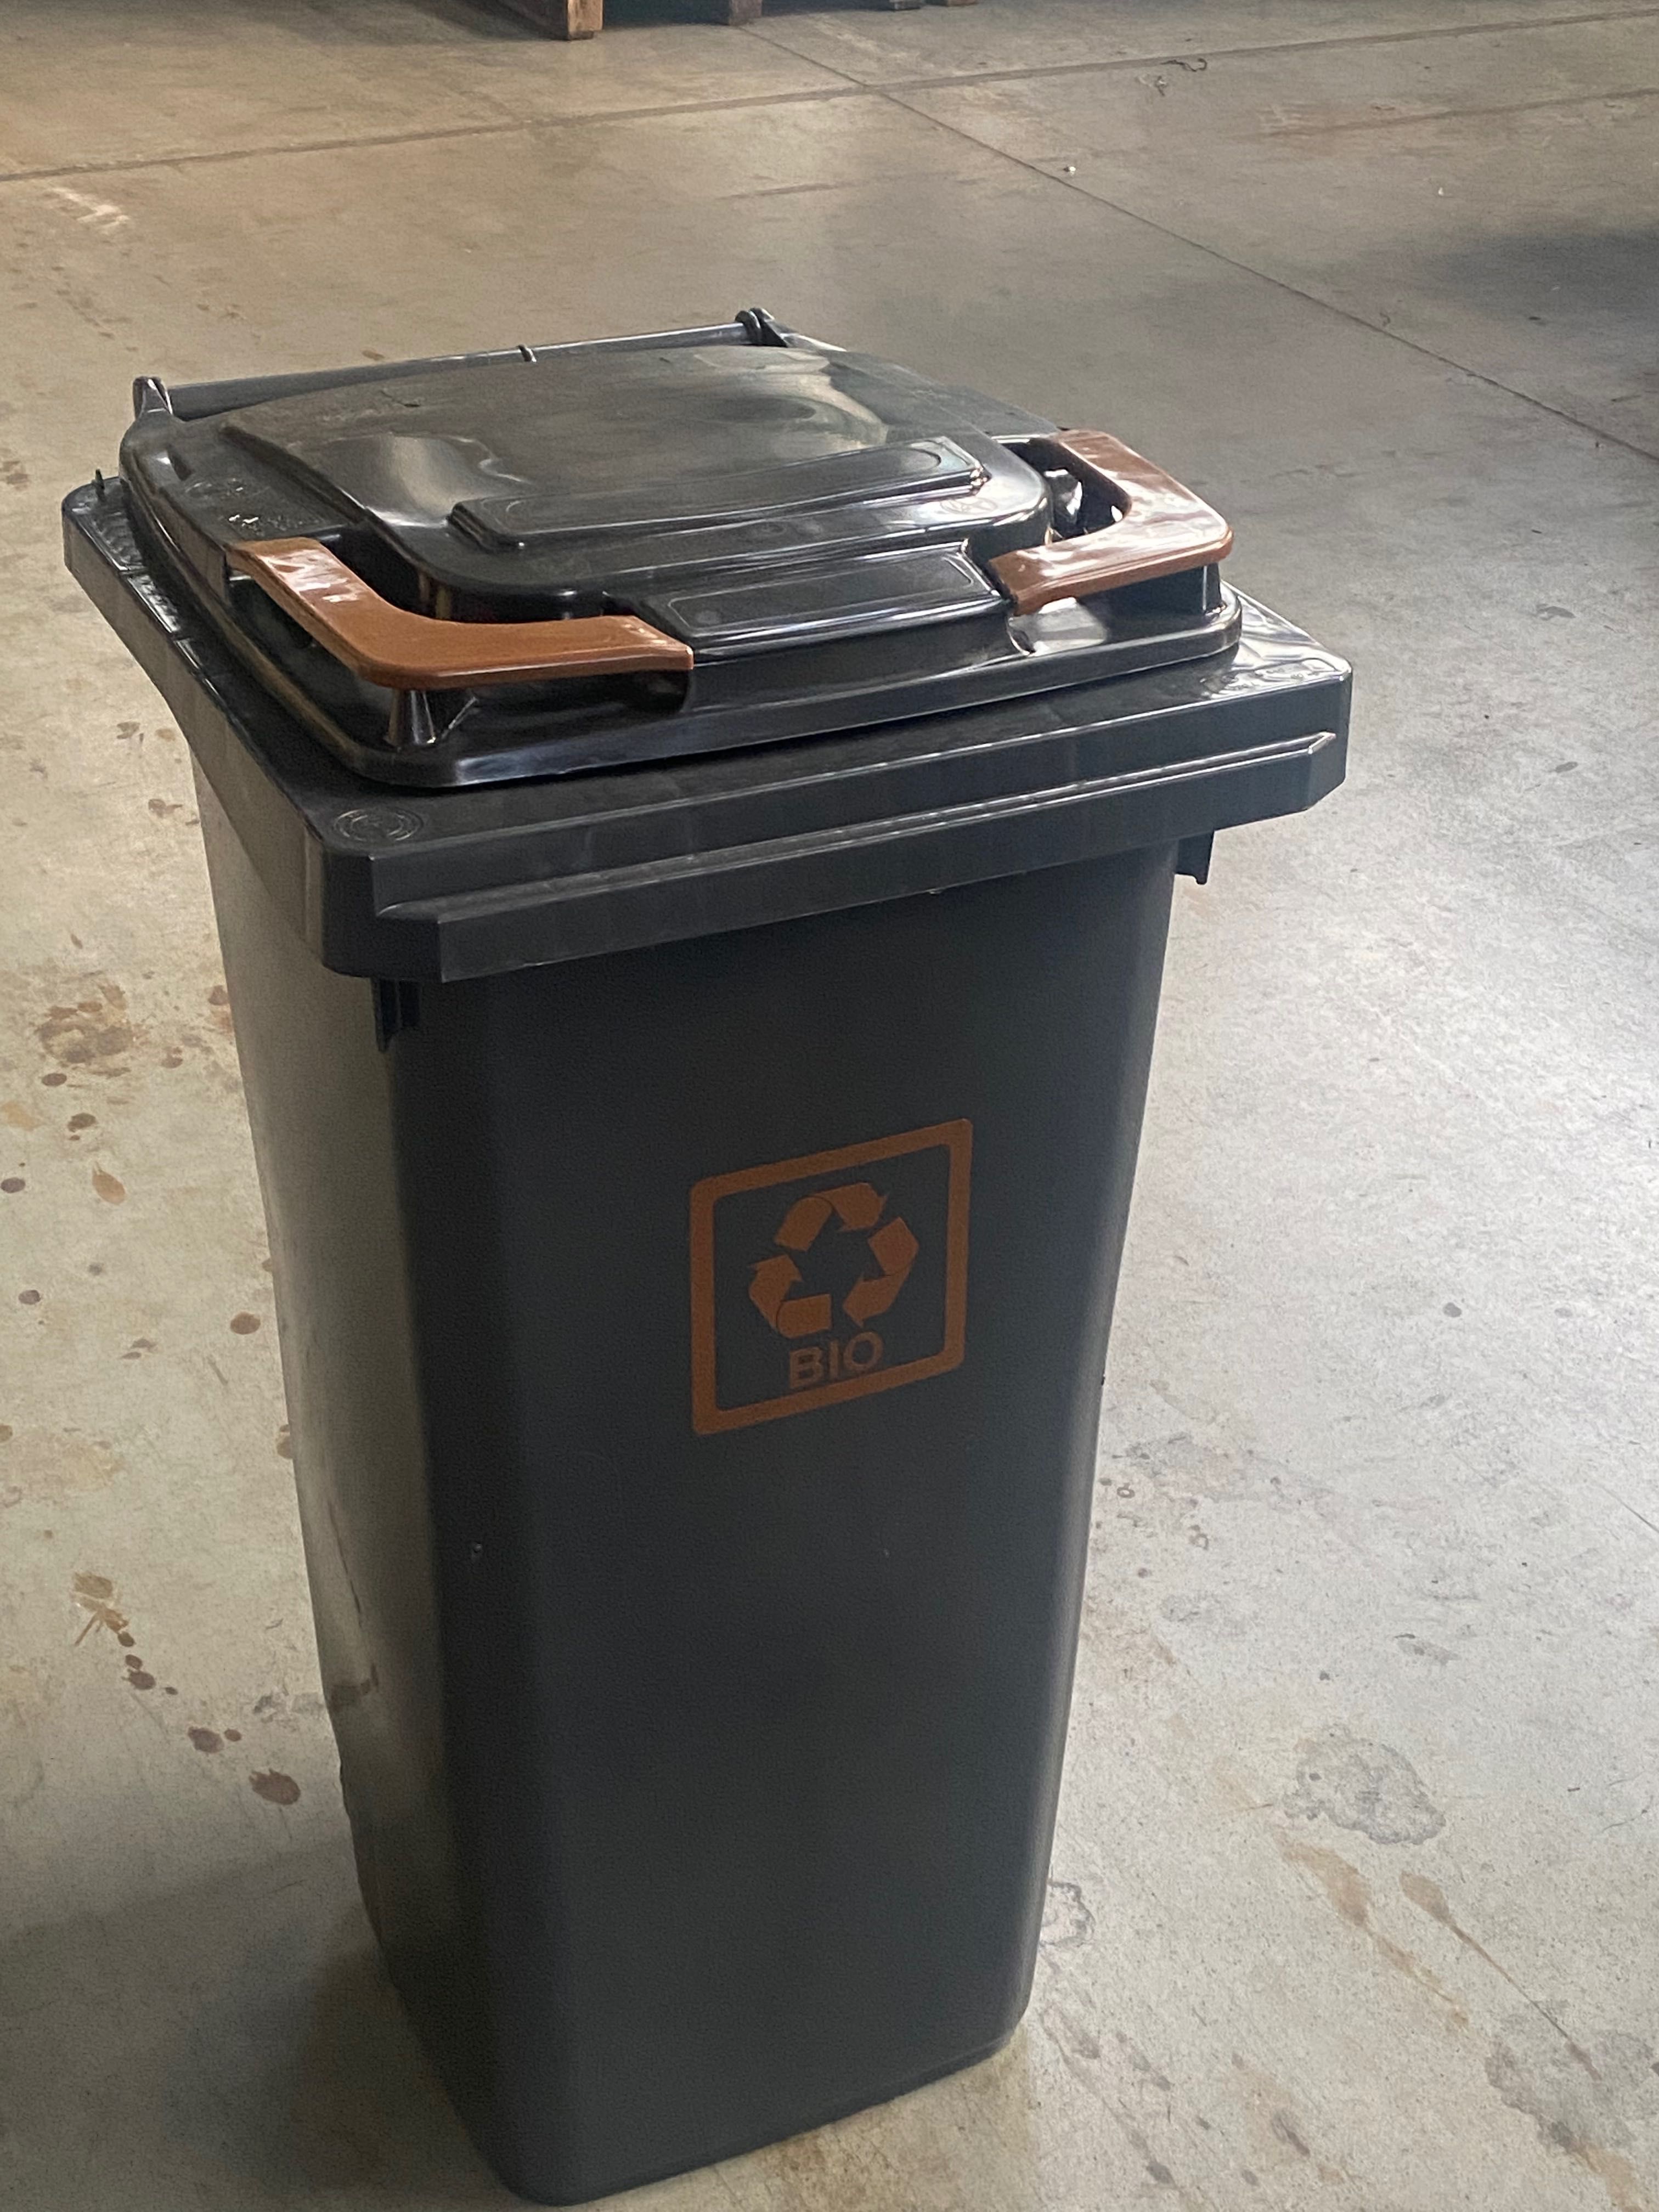 Kontener pojemnik kosz kubeł 240L na śmieci odpady segregacja bio ese